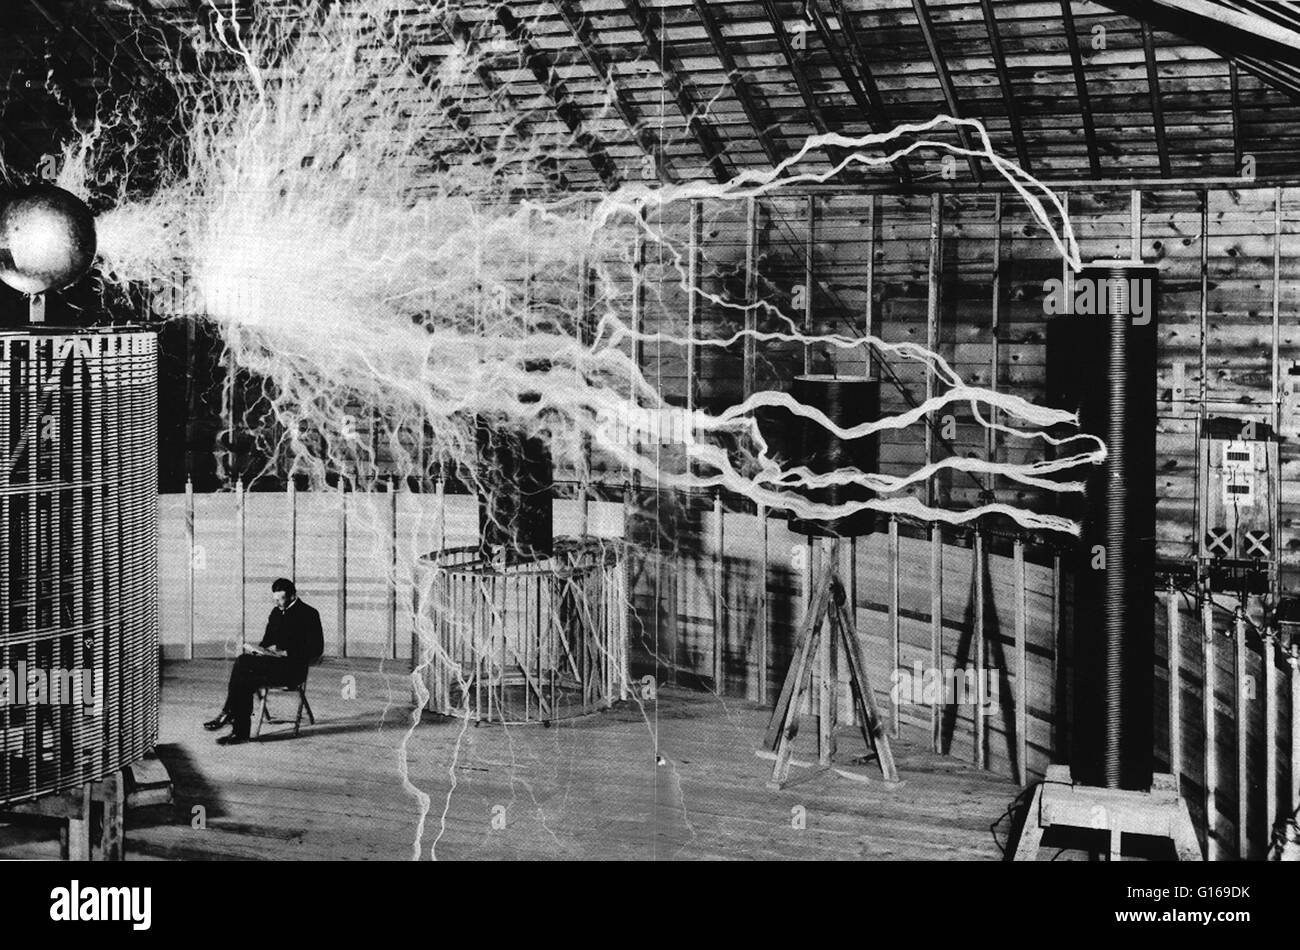 Werbung-Bild von Tesla sitzt in seinem Labor in Colorado Springs mit seinen "Magnifying Transmitter" Millionen Volt erzeugen und Herstellung von 23 Fuß langen Bögen. Das Bild wurde mit Trick Fotografie über eine Doppelbelichtung erzeugt. Die elektrische Bolzen Stockfoto